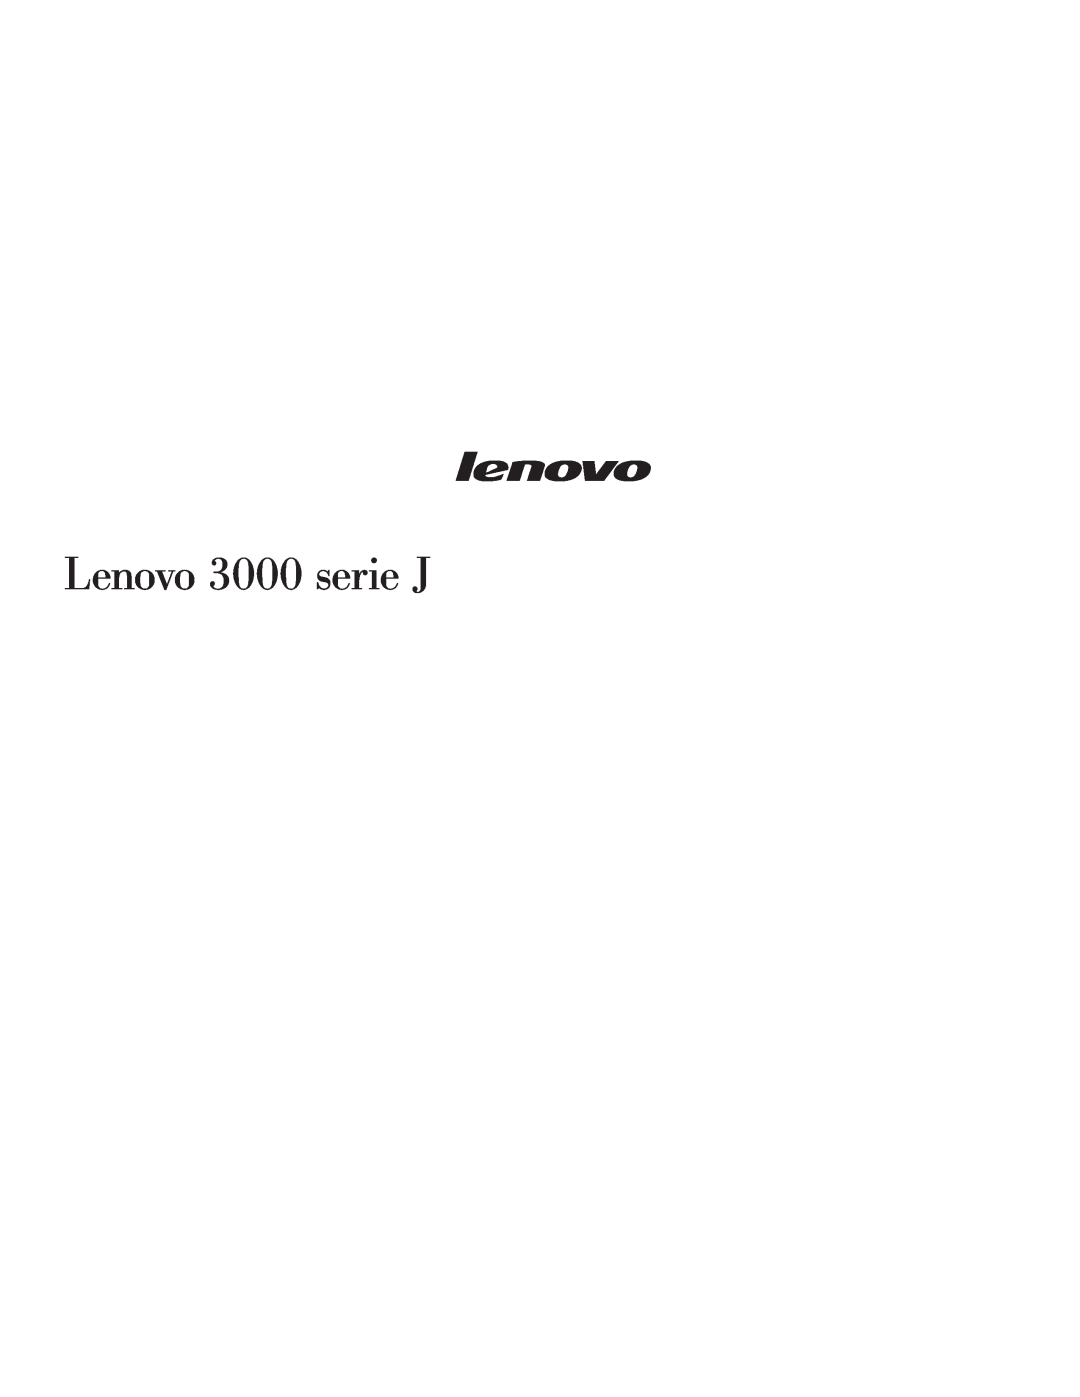 Lenovo 3000 SERIE J manual Lenovo 3000 serie J 